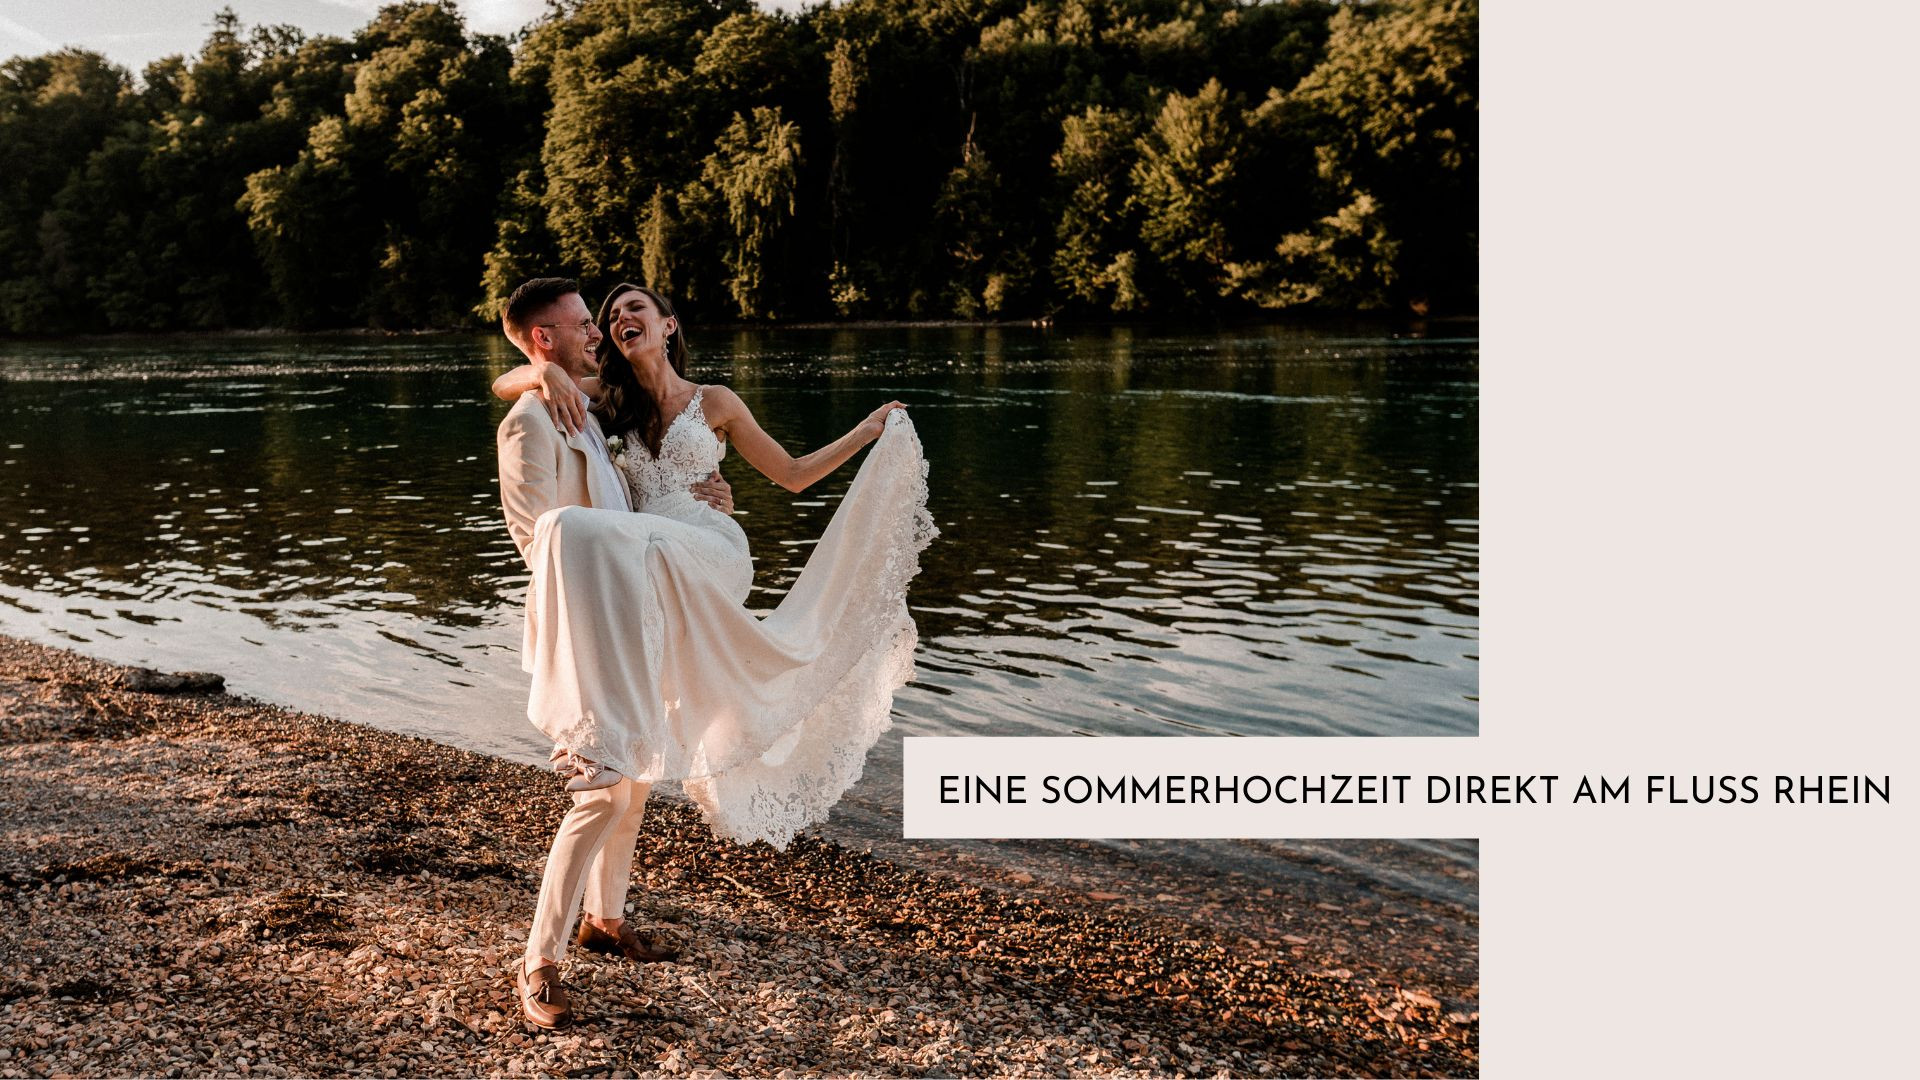 Aida + Tim | Hochzeitsfotografen am Bodensee Hochzeitsfotografen und Videografen aus Konstanz am Bodensee | DE, CH & AT  - Hochzeitsfotografie von Aida und Tim